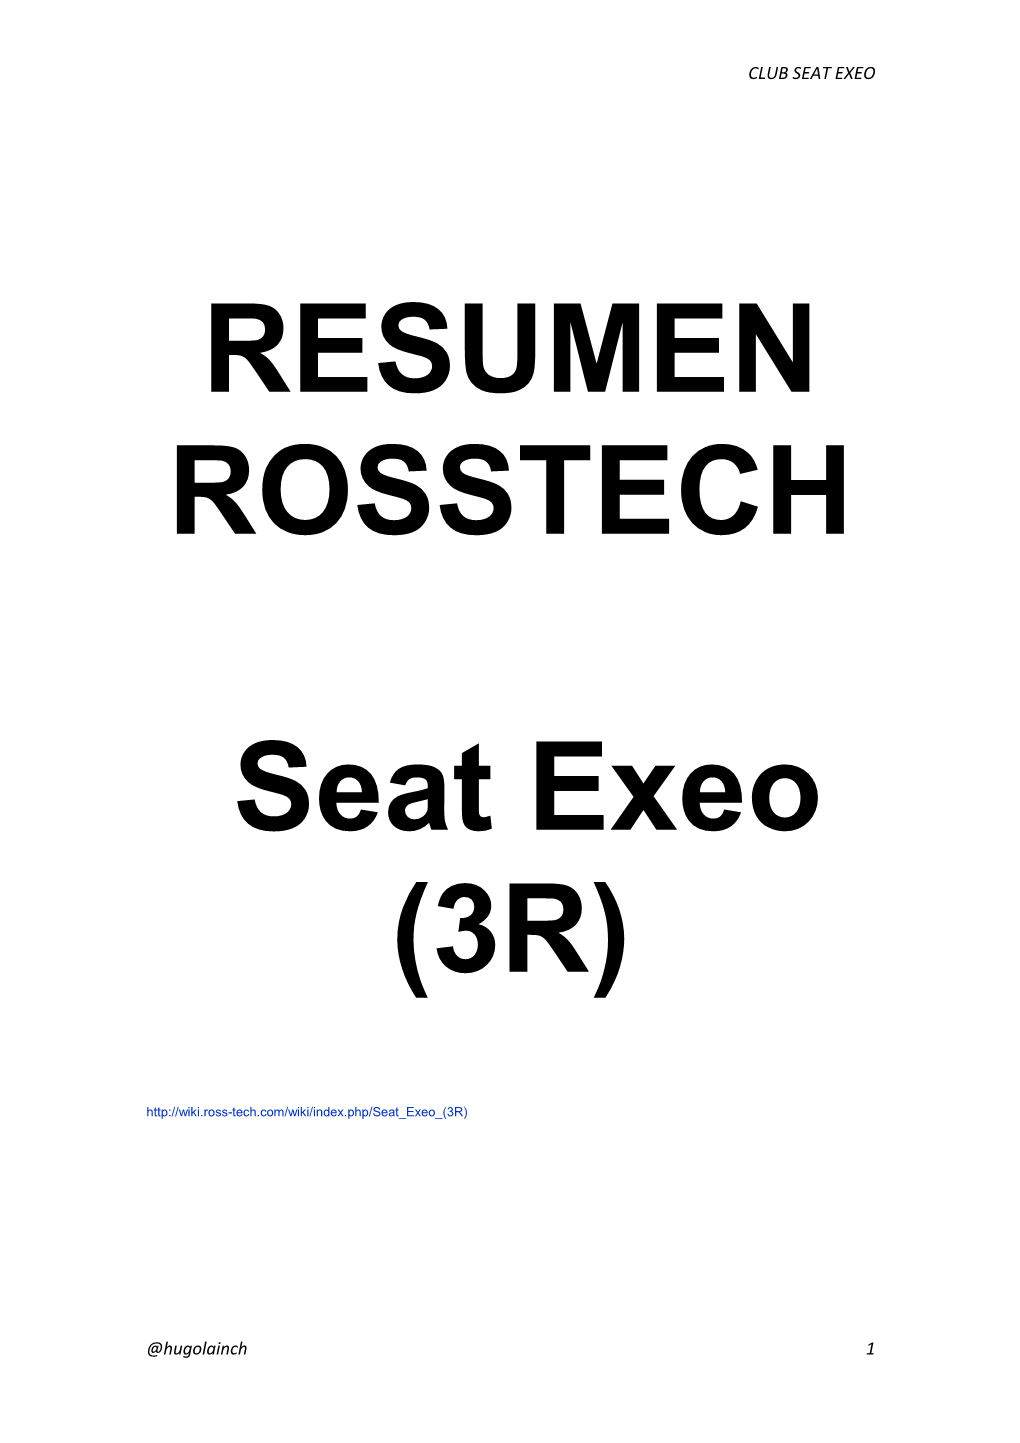 RESUMEN ROSSTECH PARA Seat Exeo